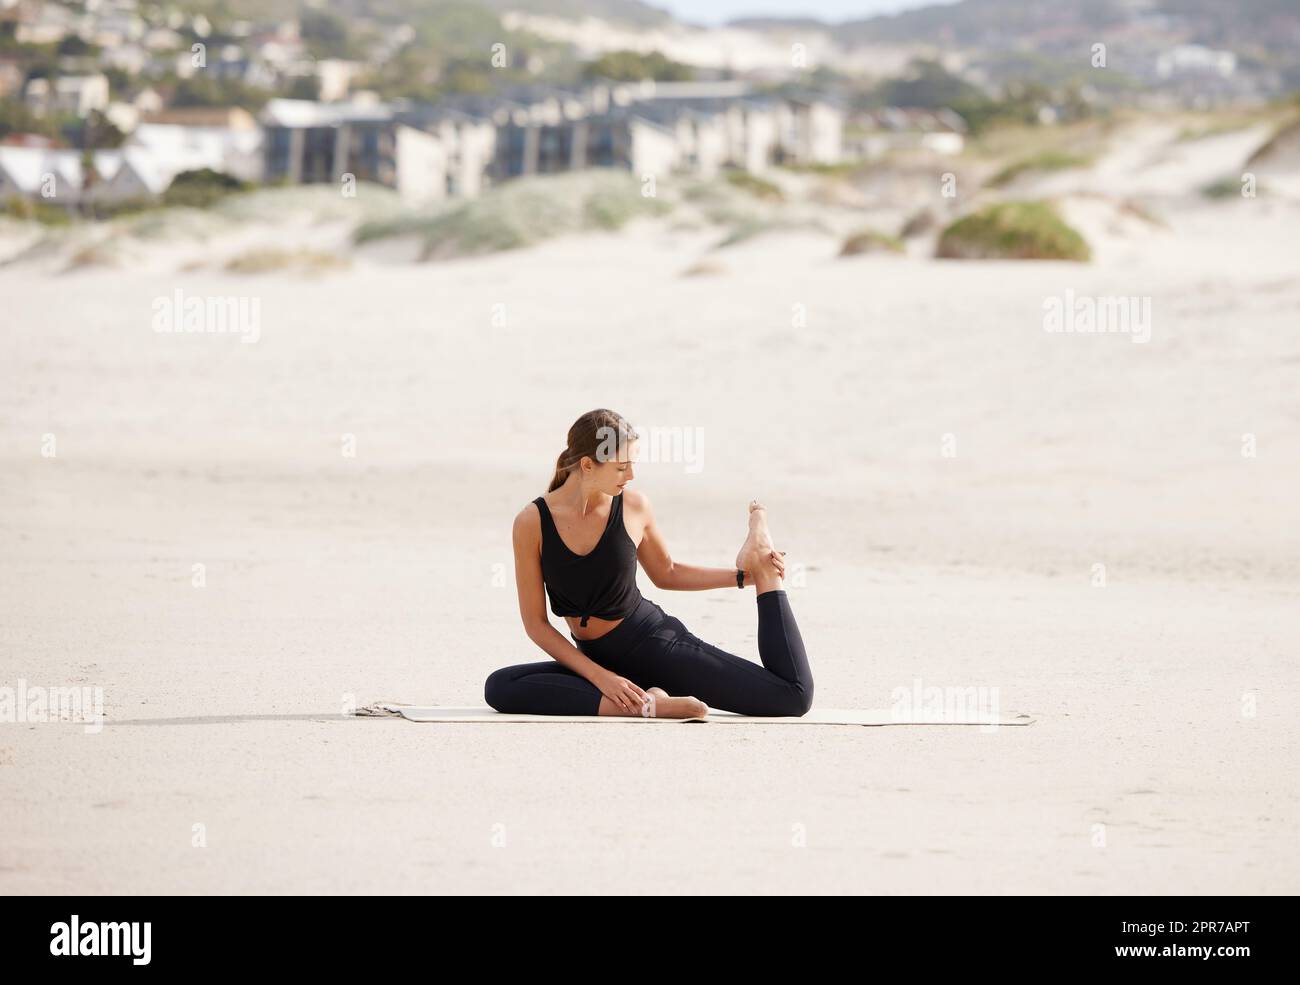 Das Meer bildet die perfekte Landschaft, um an sich selbst zu arbeiten. Eine junge Frau, die eine Taubenpose macht, während sie am Strand Yoga praktiziert. Stockfoto